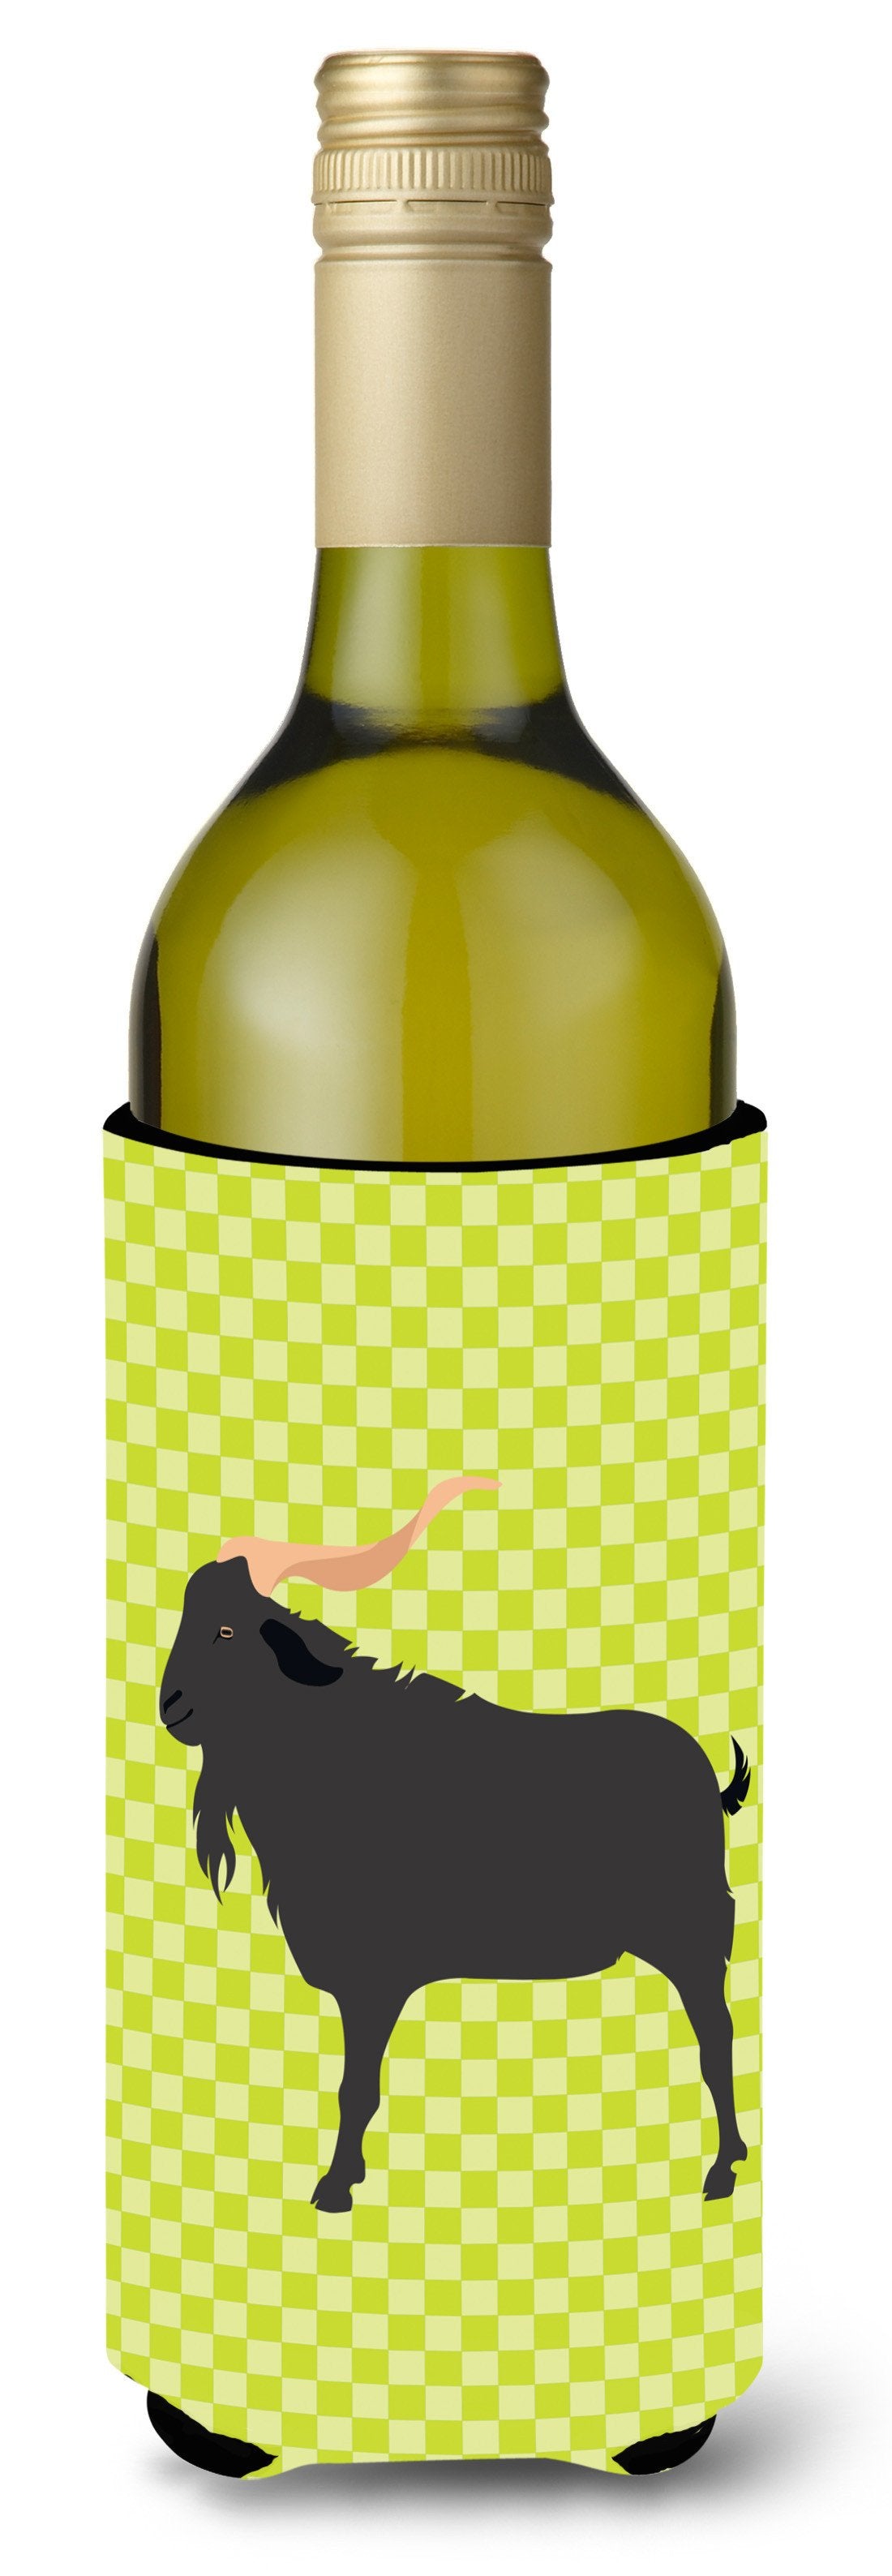 Verata Goat Green Wine Bottle Beverge Insulator Hugger BB7708LITERK by Caroline&#39;s Treasures